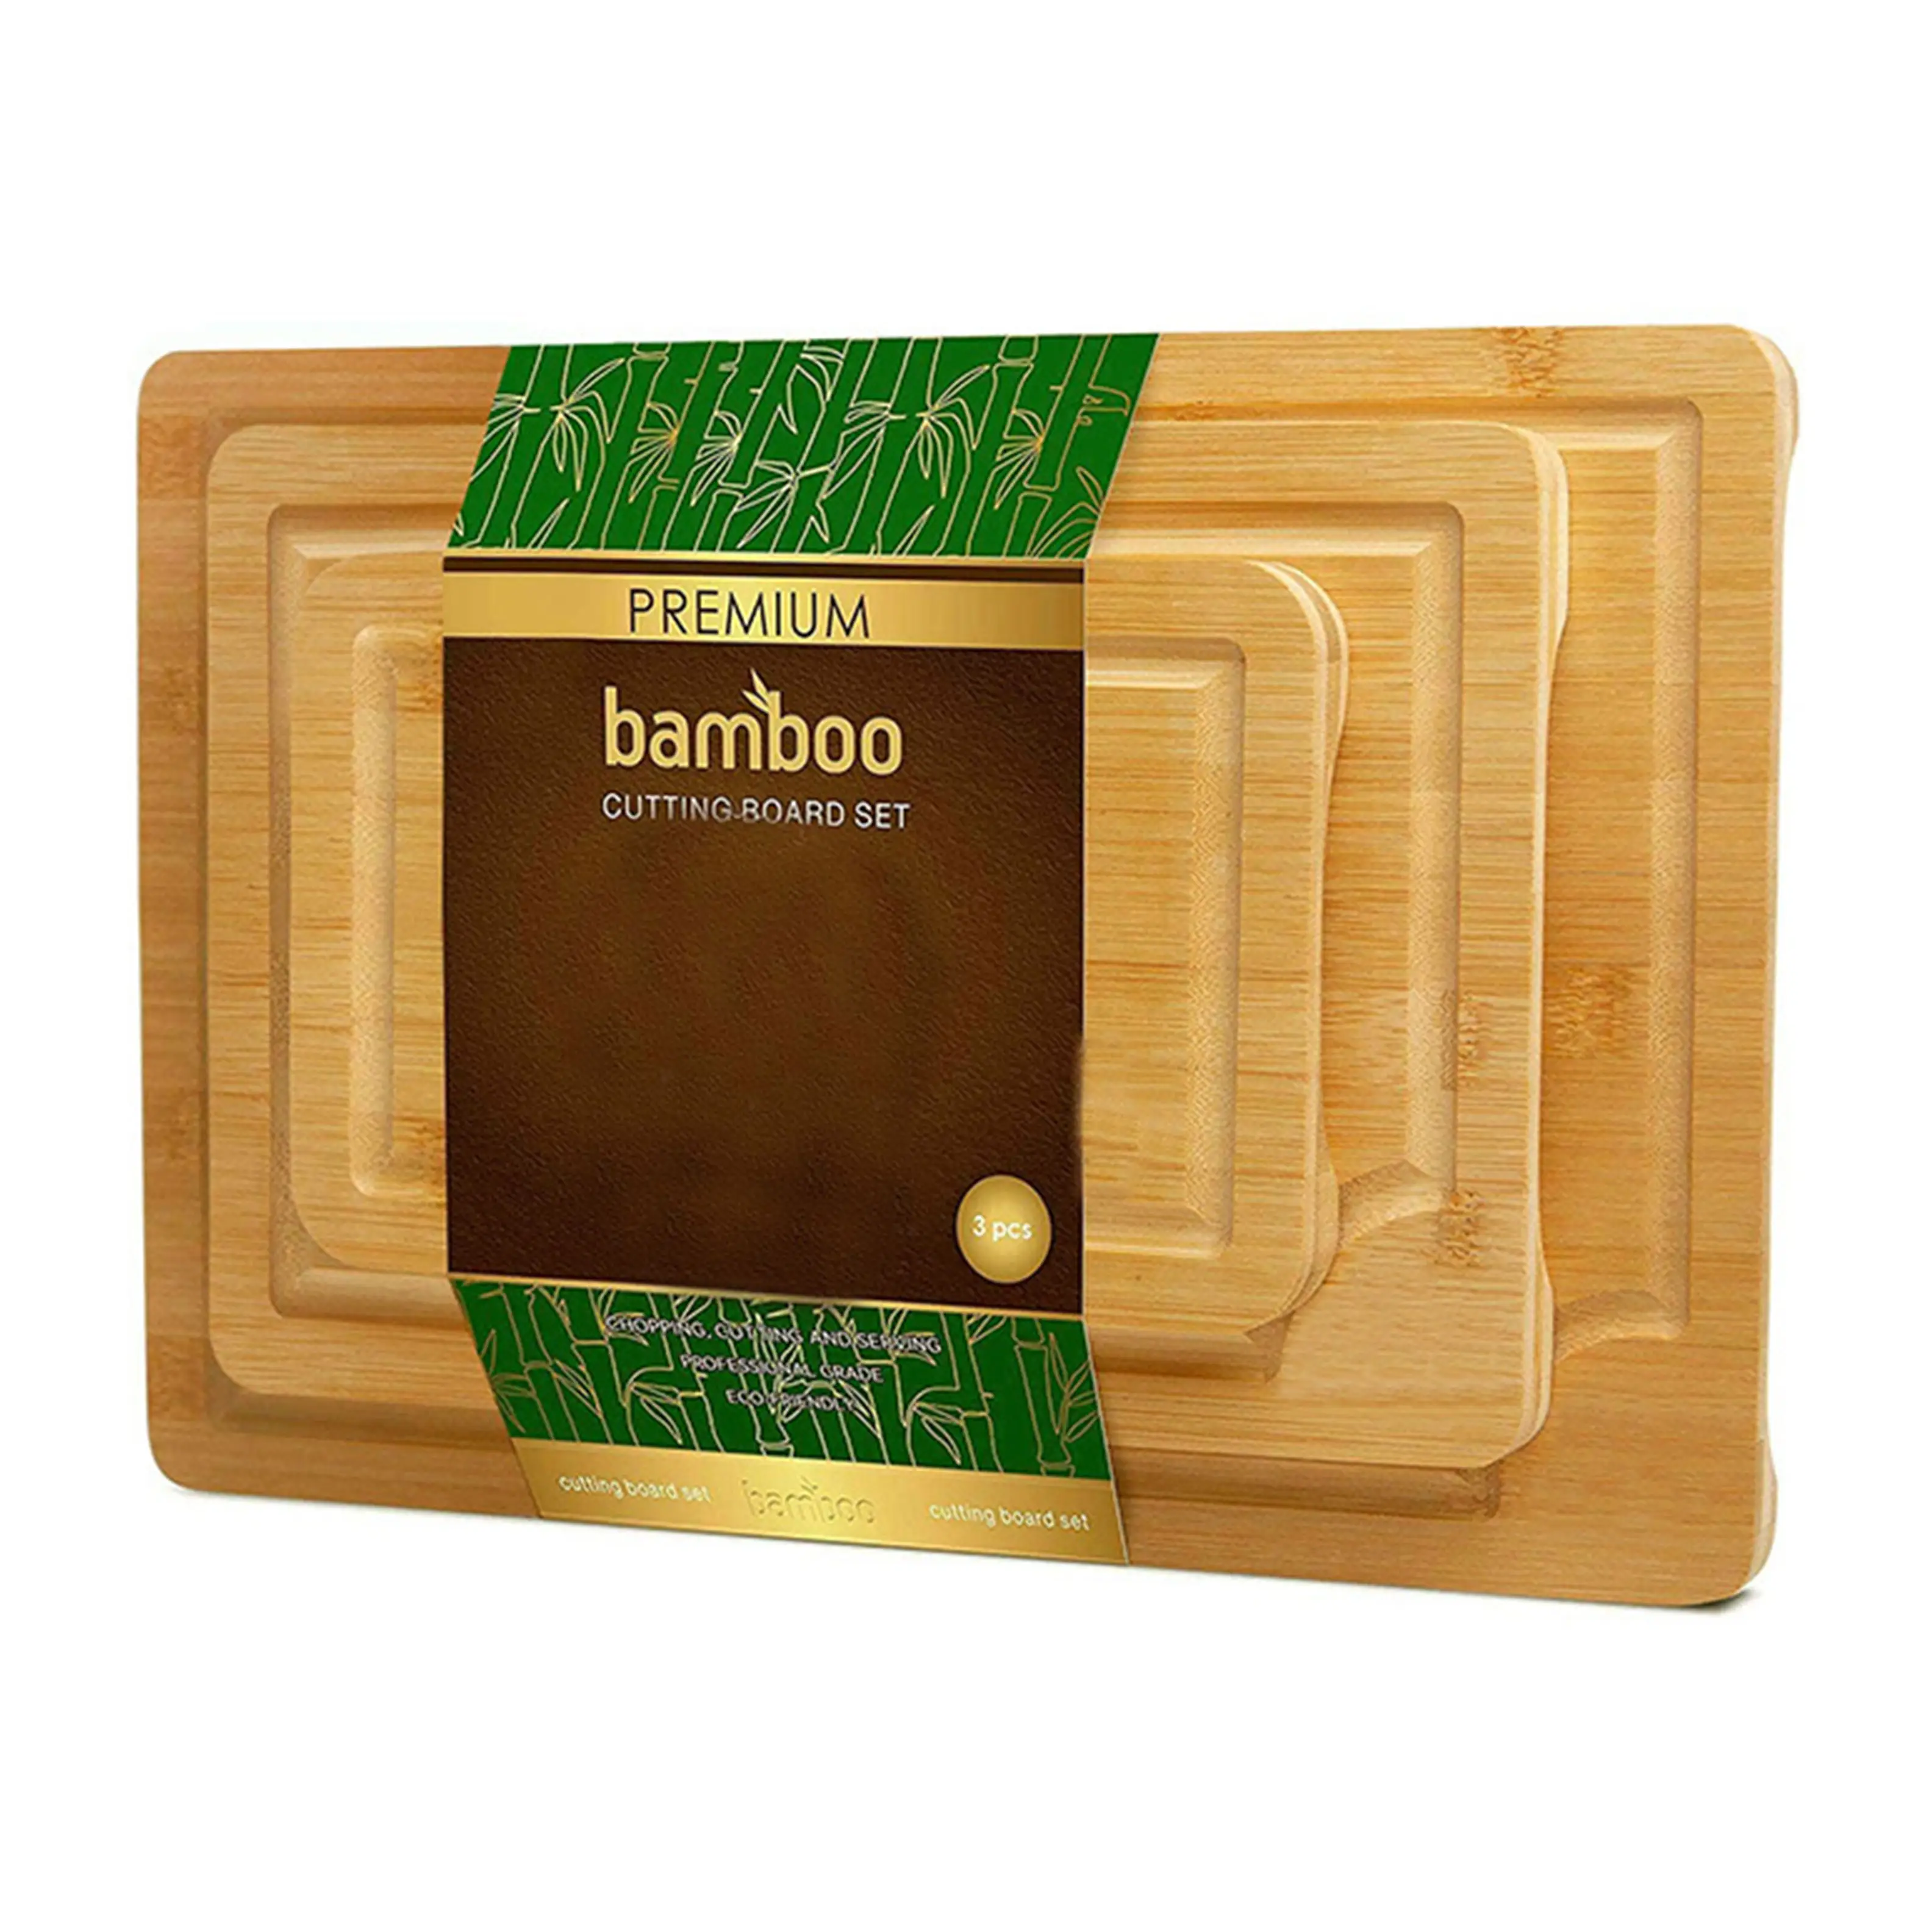 Заводские пользовательские лазерные доски для резки, кухонная разделочная доска набор из 3 частей, Бамбуковая разделочная доска набор из 3